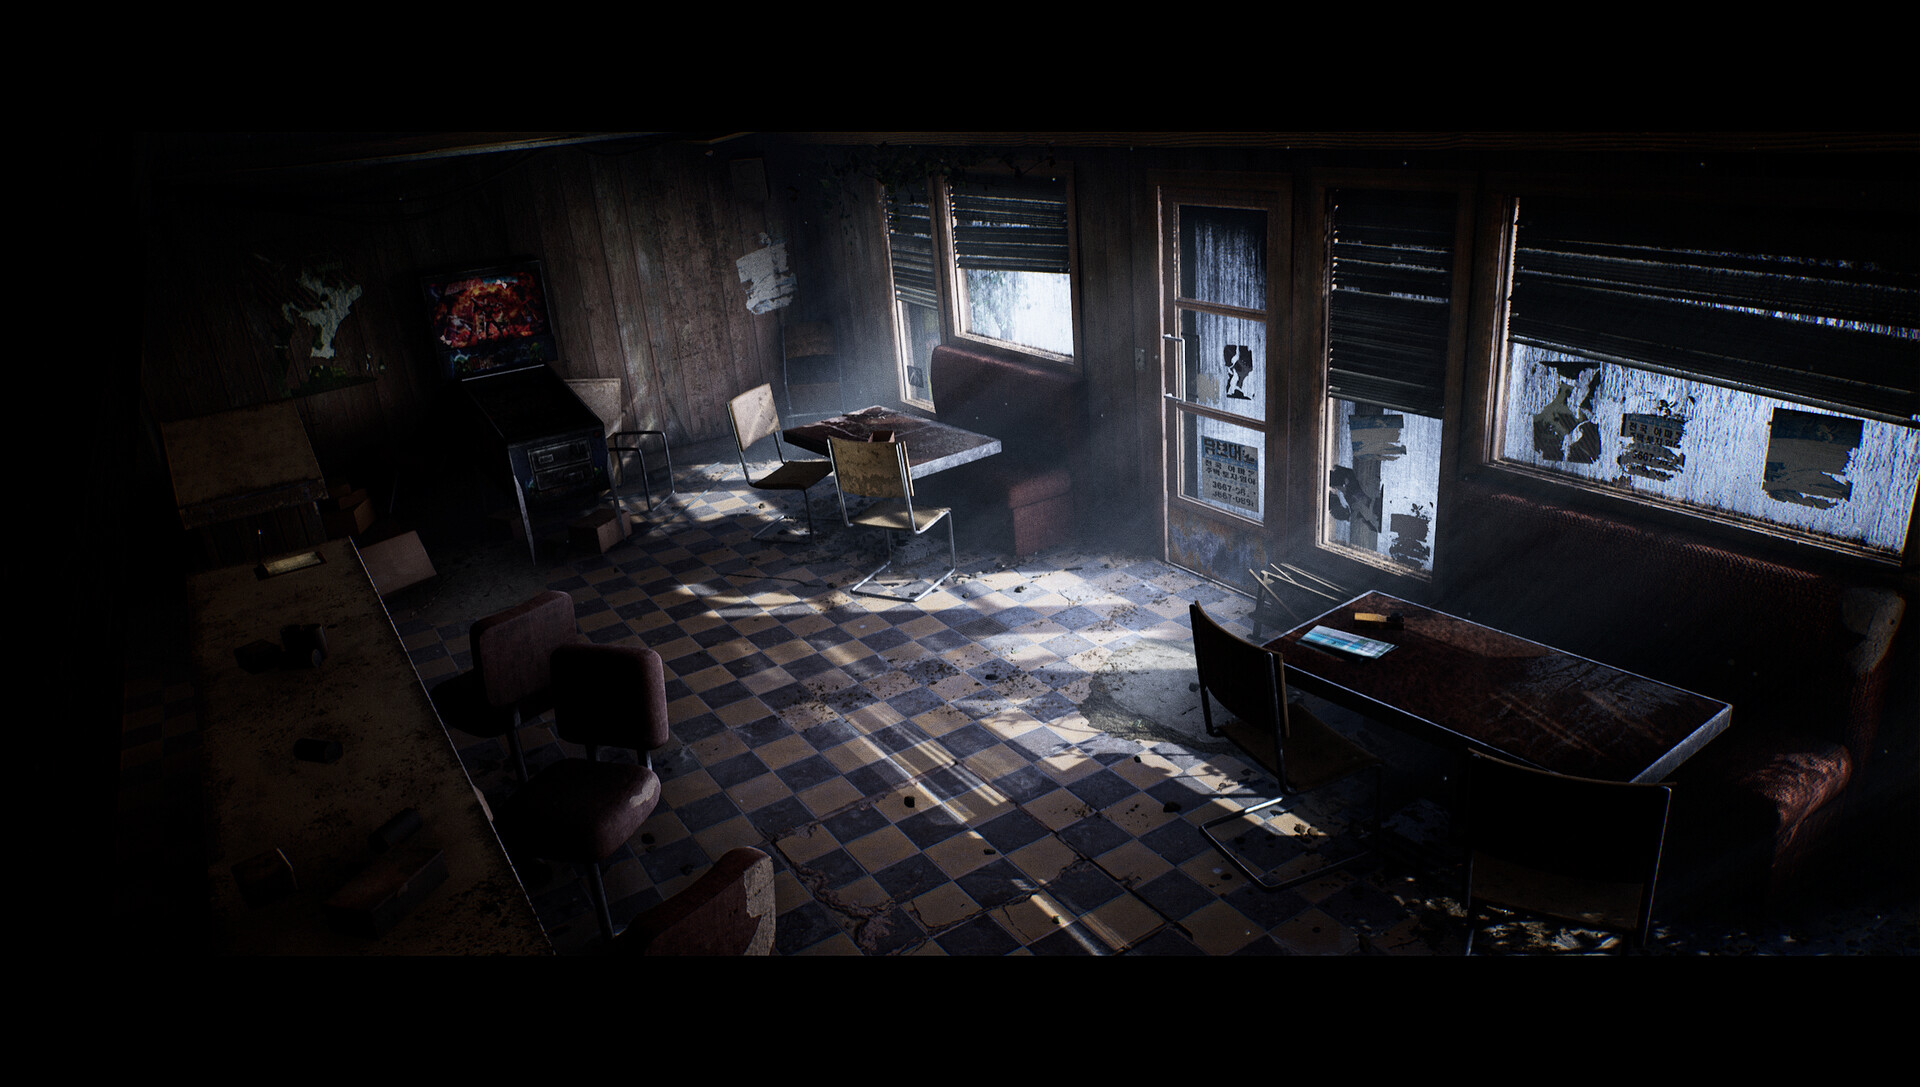 Художник воссоздал кафе из Silent Hill на Unreal Engine 4